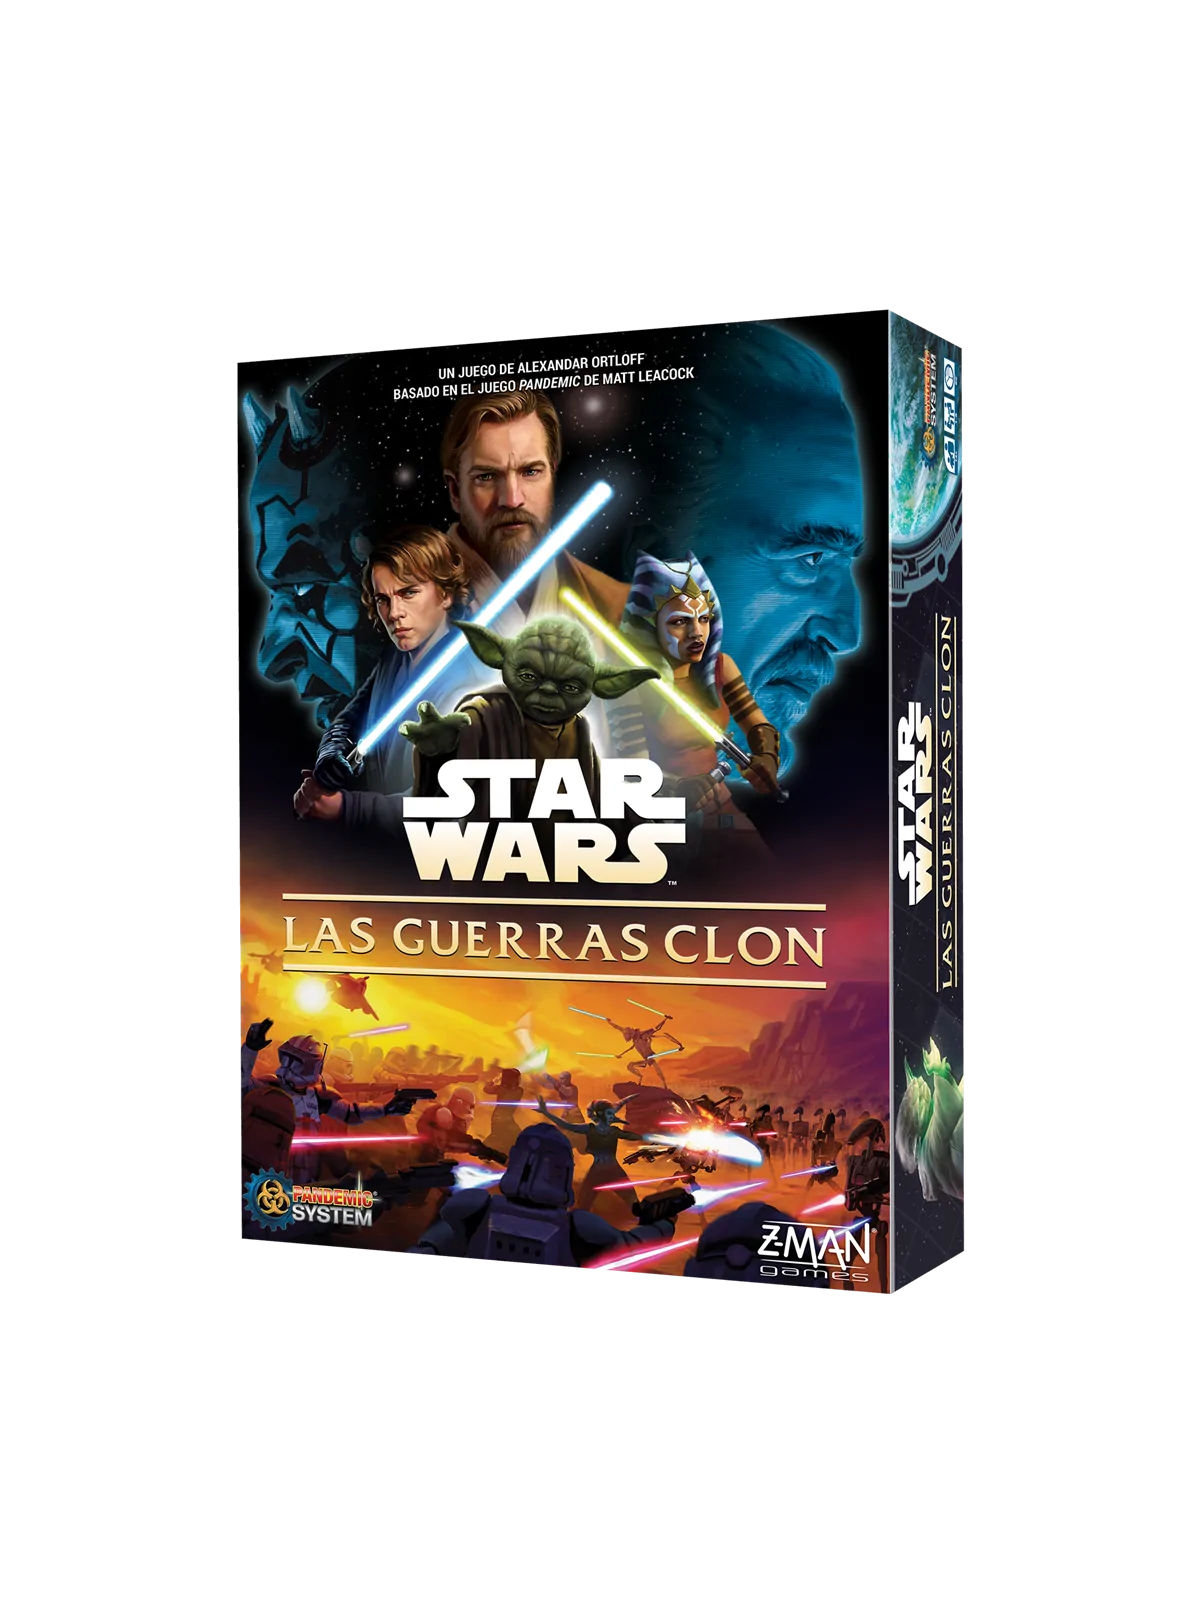 Comprar Star Wars: Las Guerras Clon barato al mejor precio 50,99 € de 